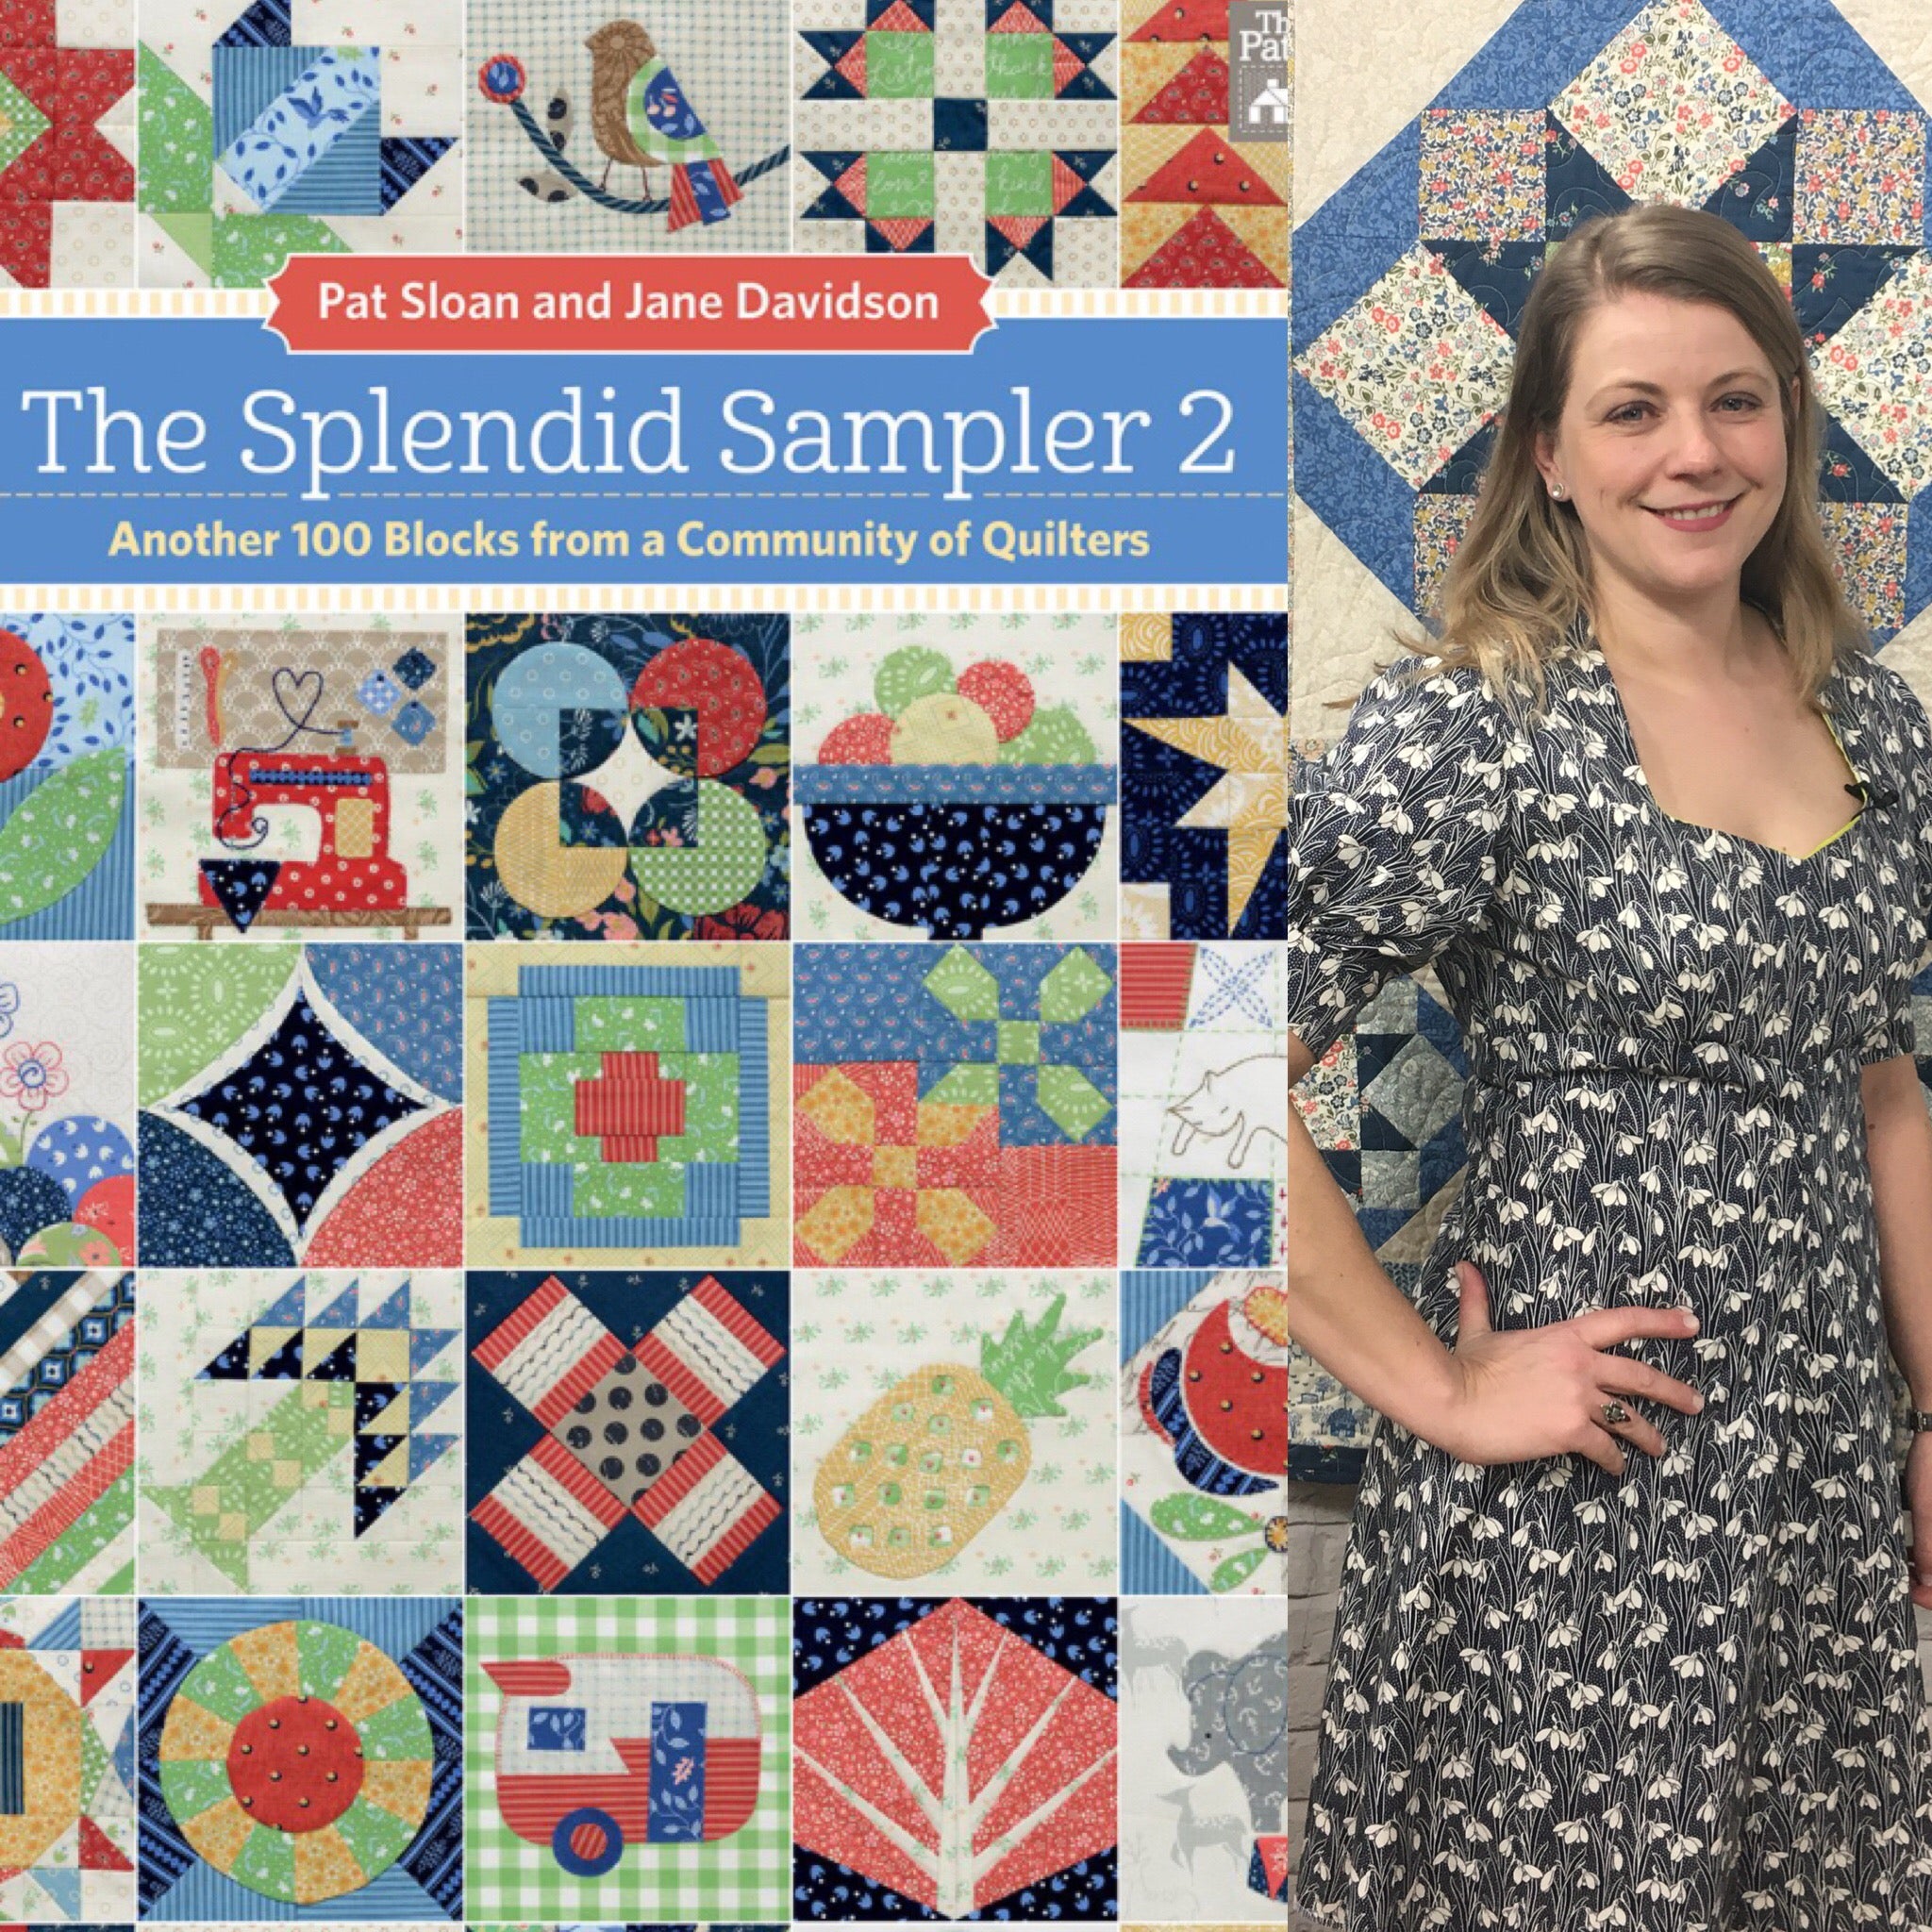 I am a designer for The Splendid Sampler 2